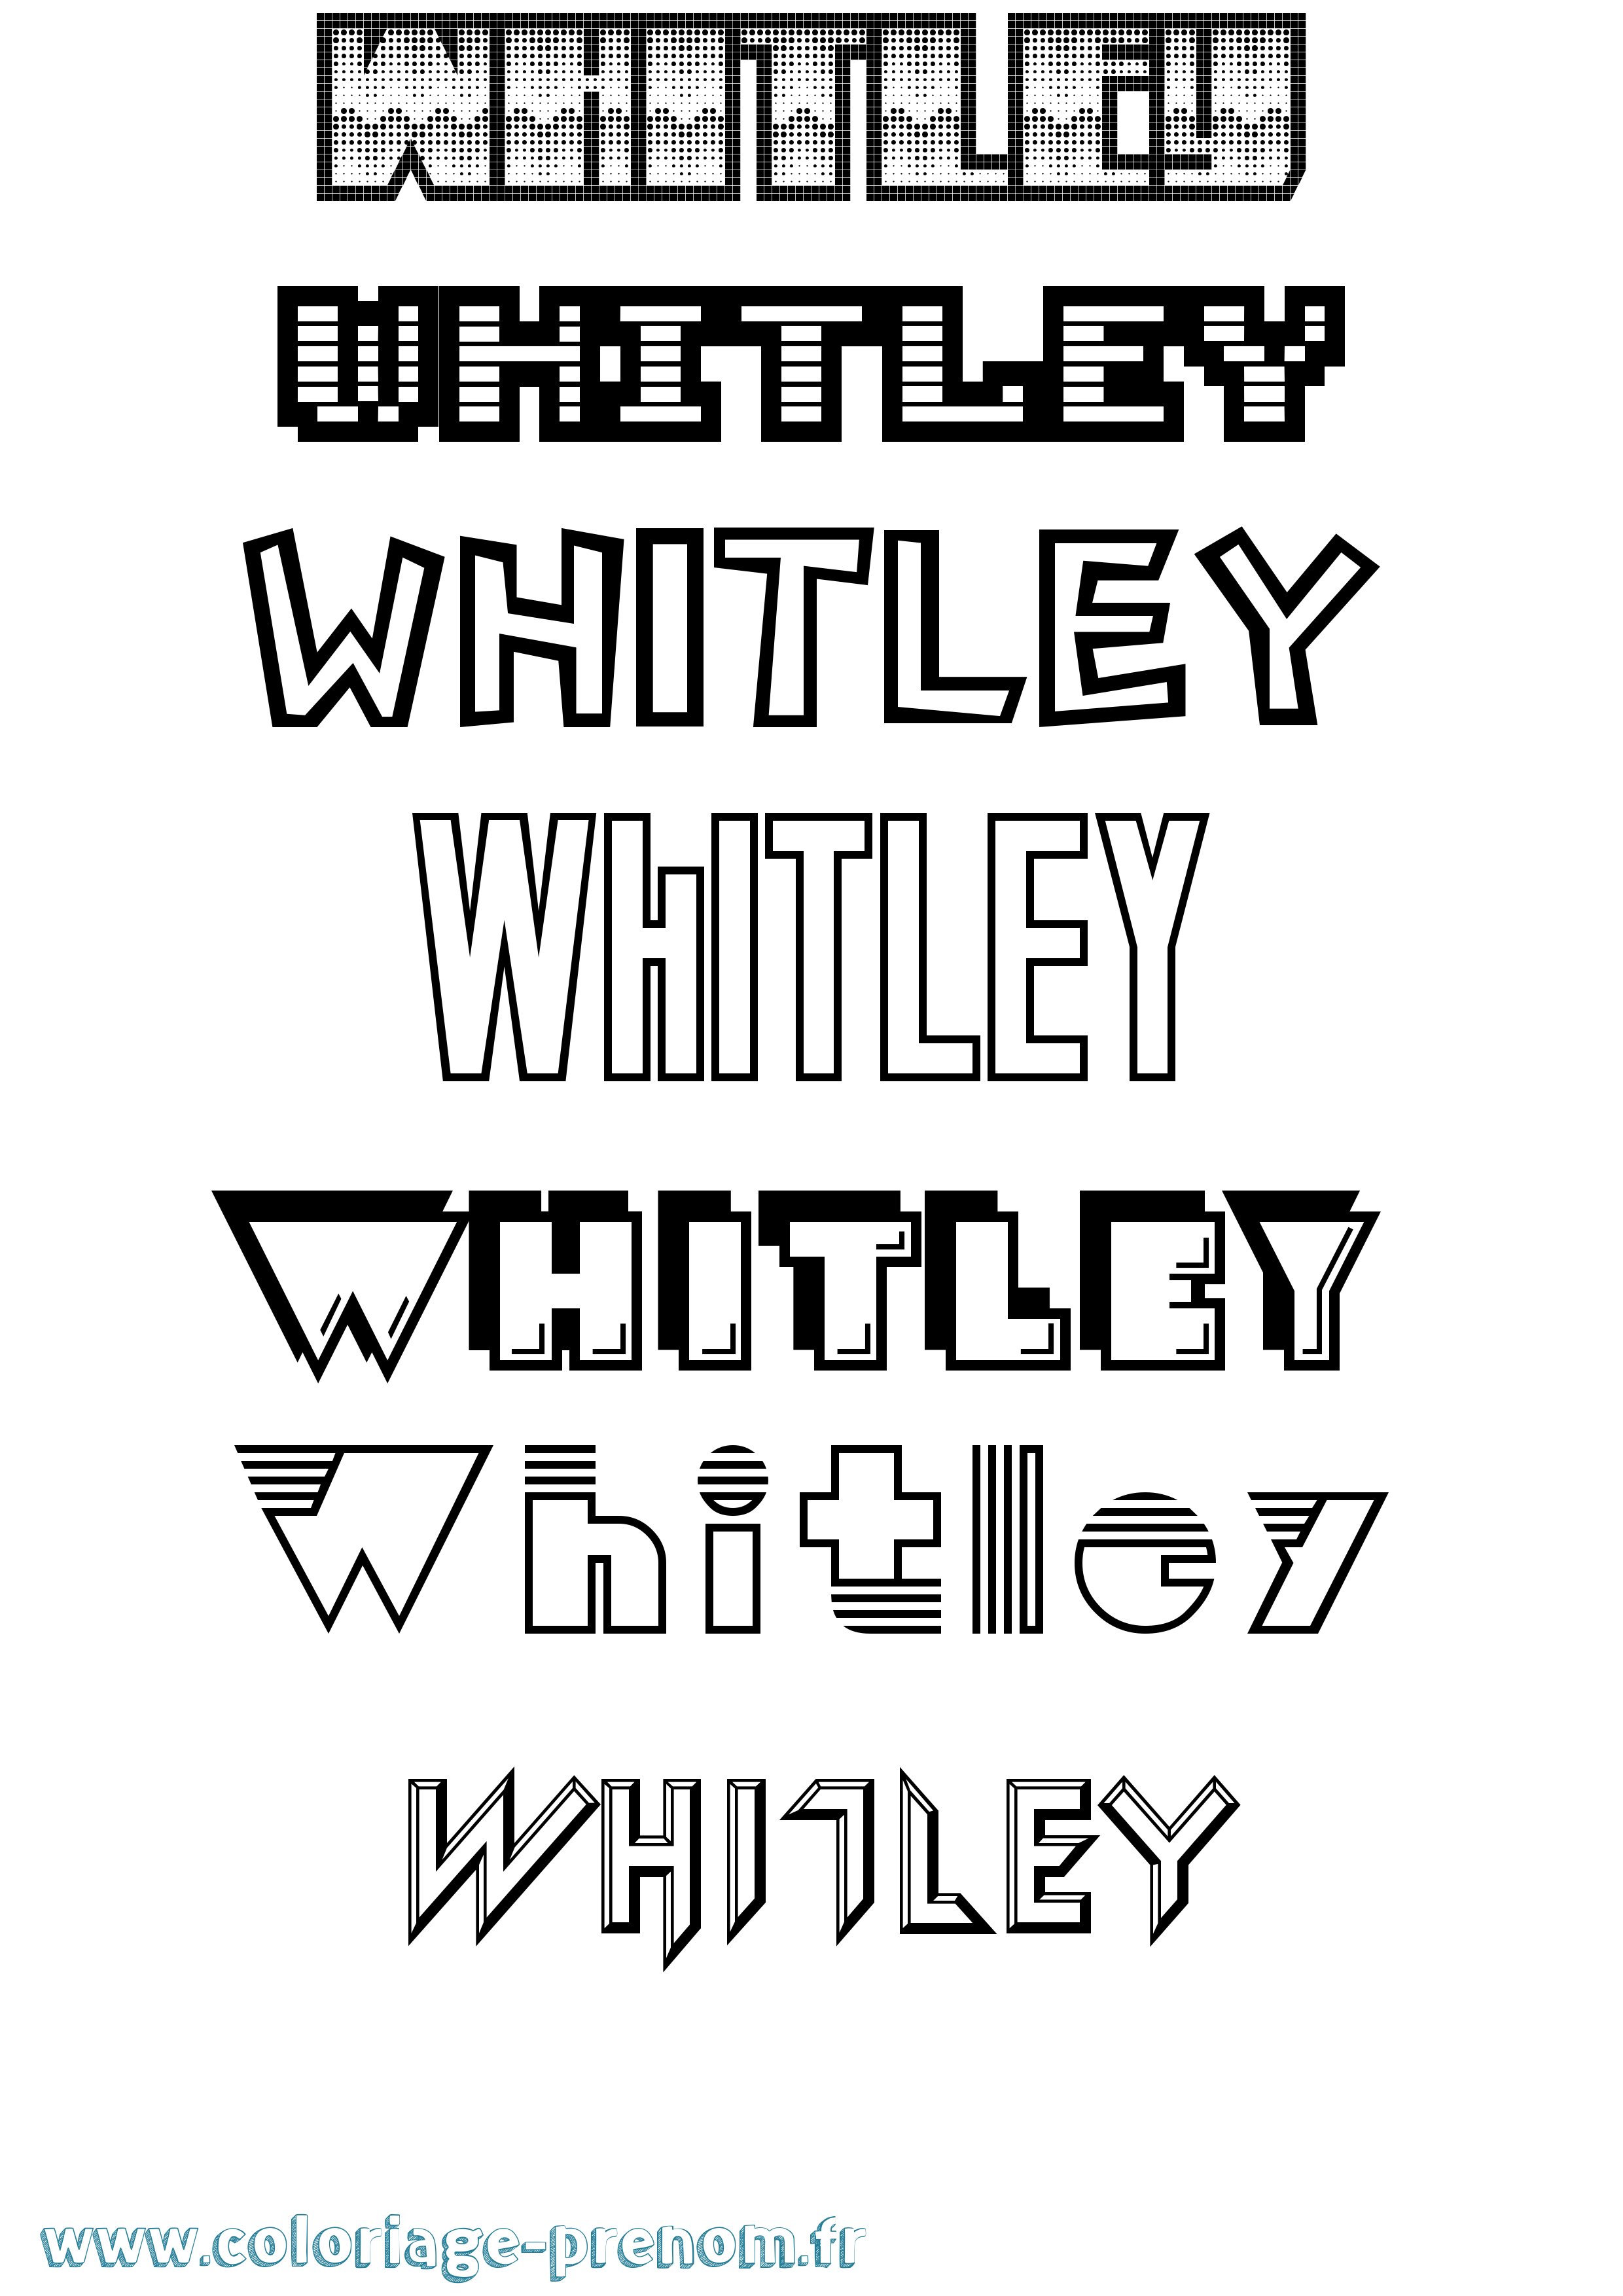 Coloriage prénom Whitley Jeux Vidéos